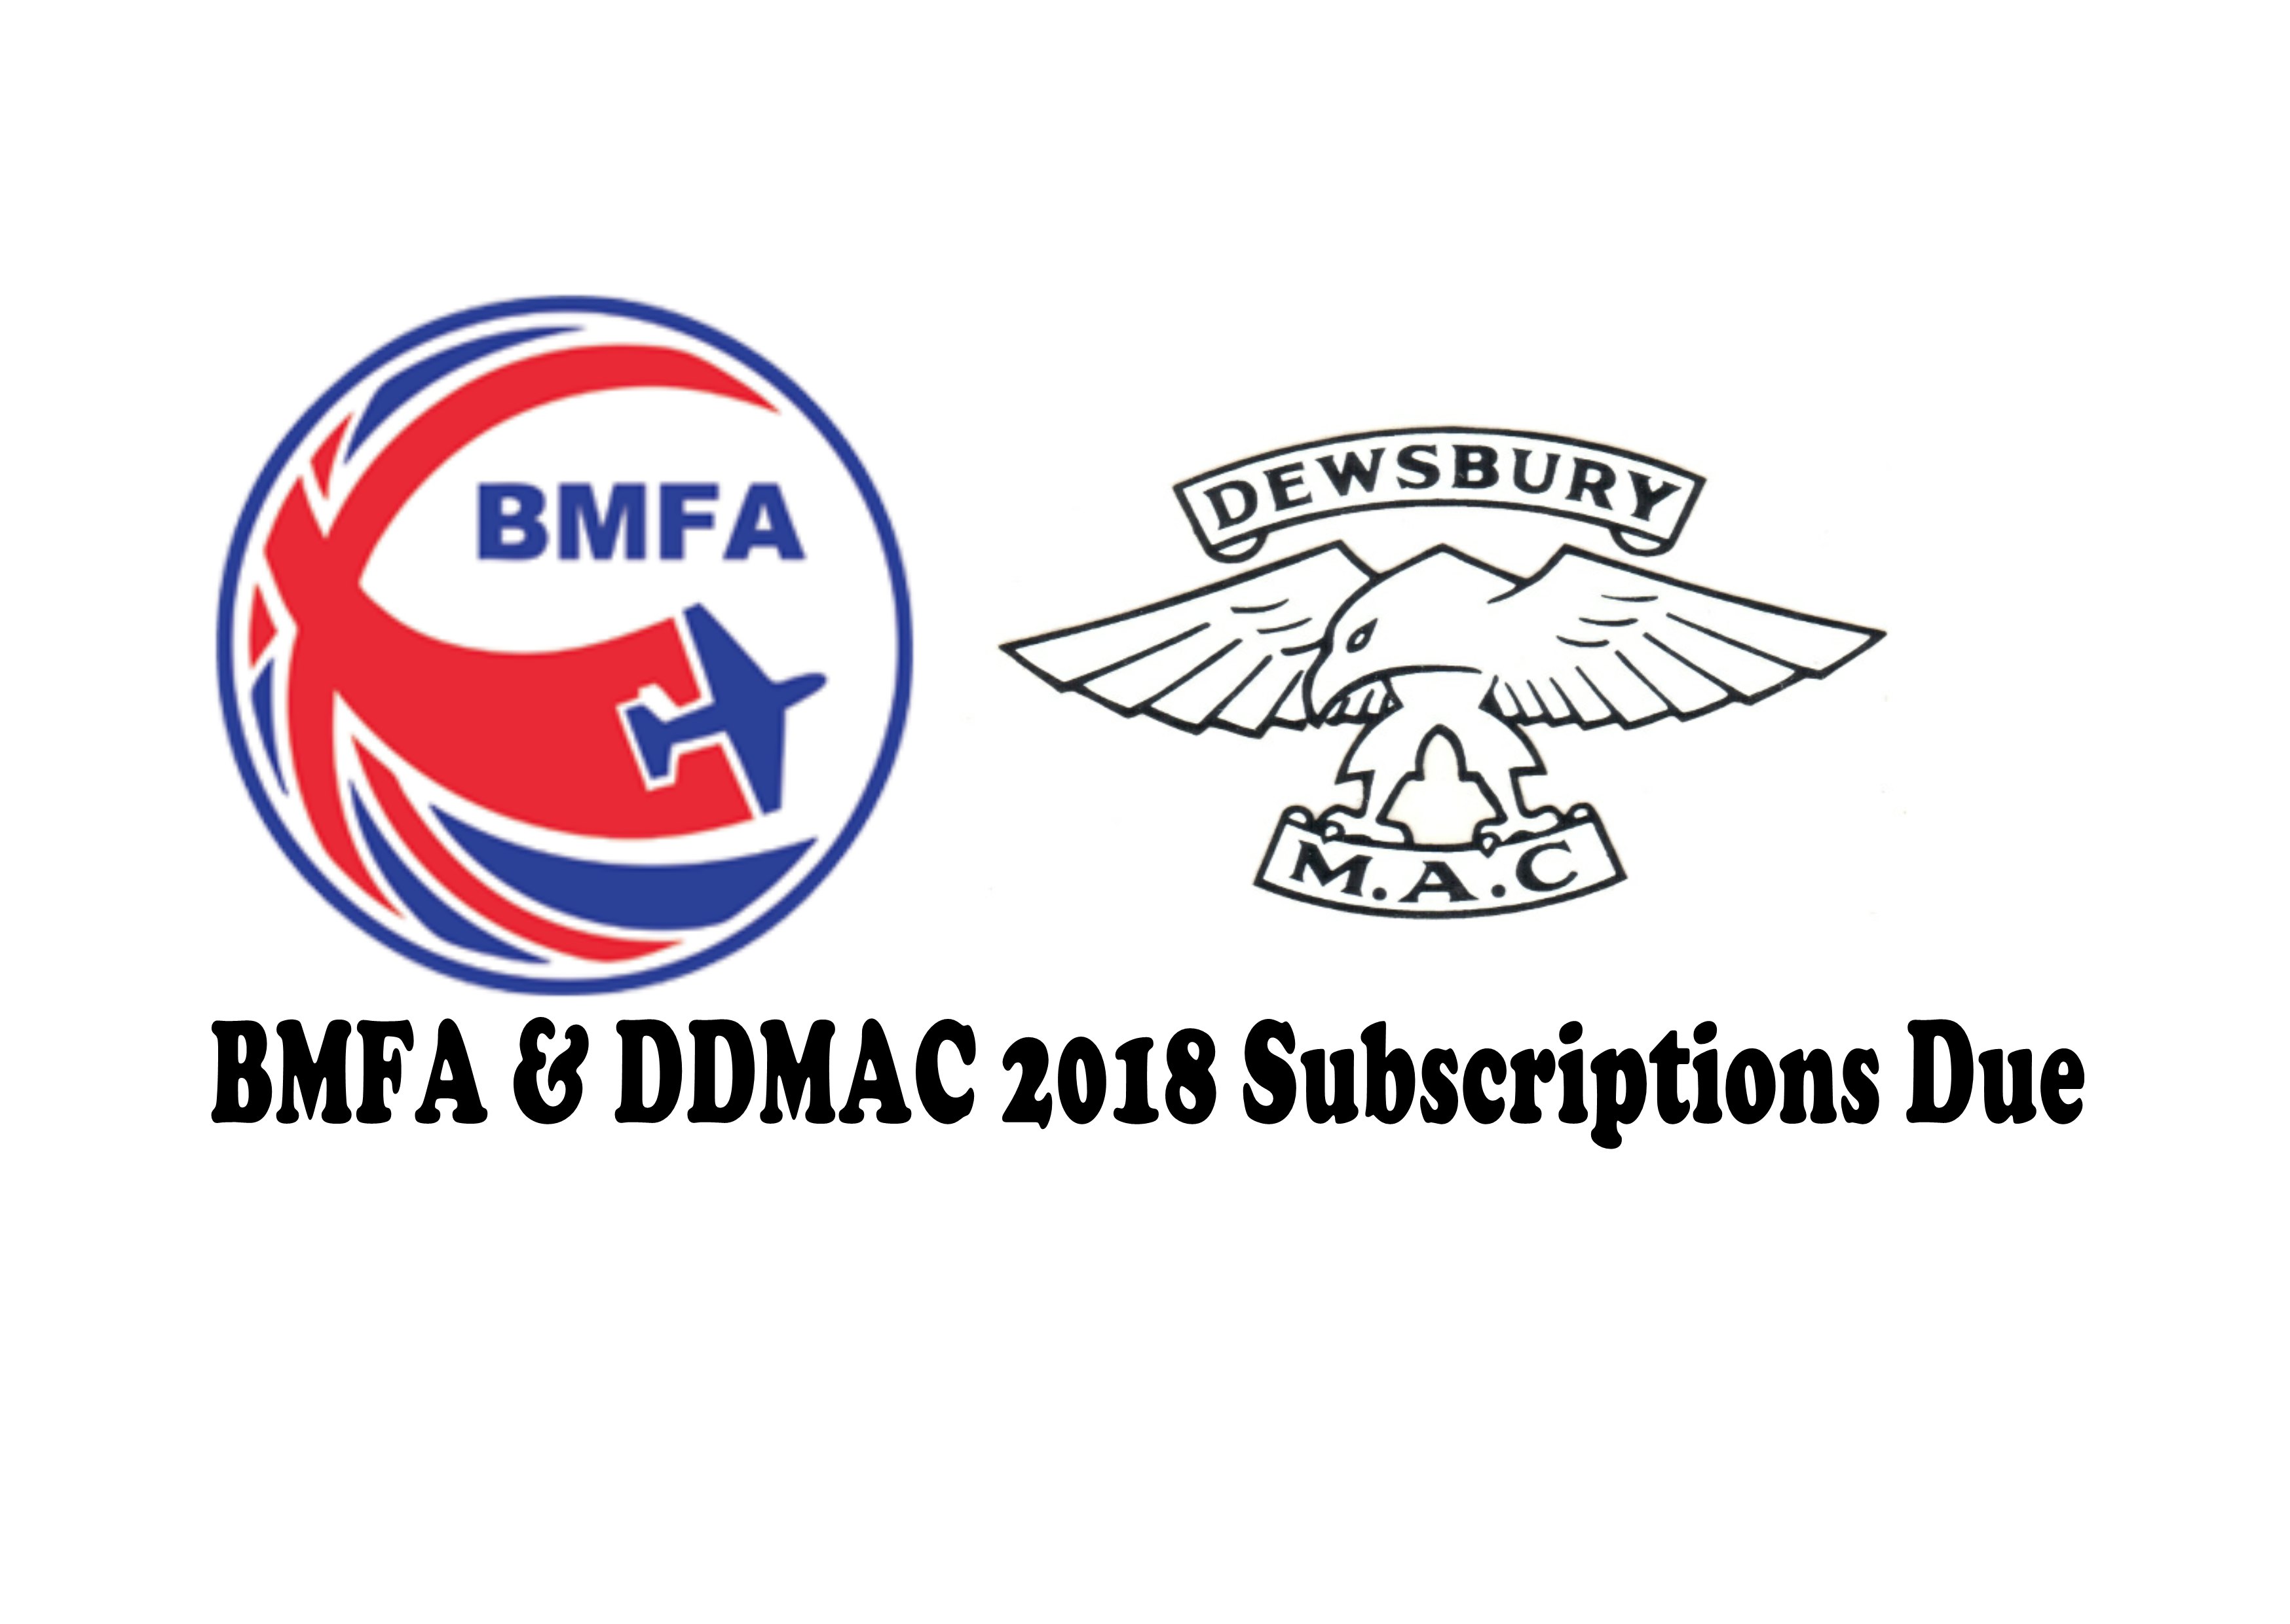 DDMAC & BMFA Subs Due